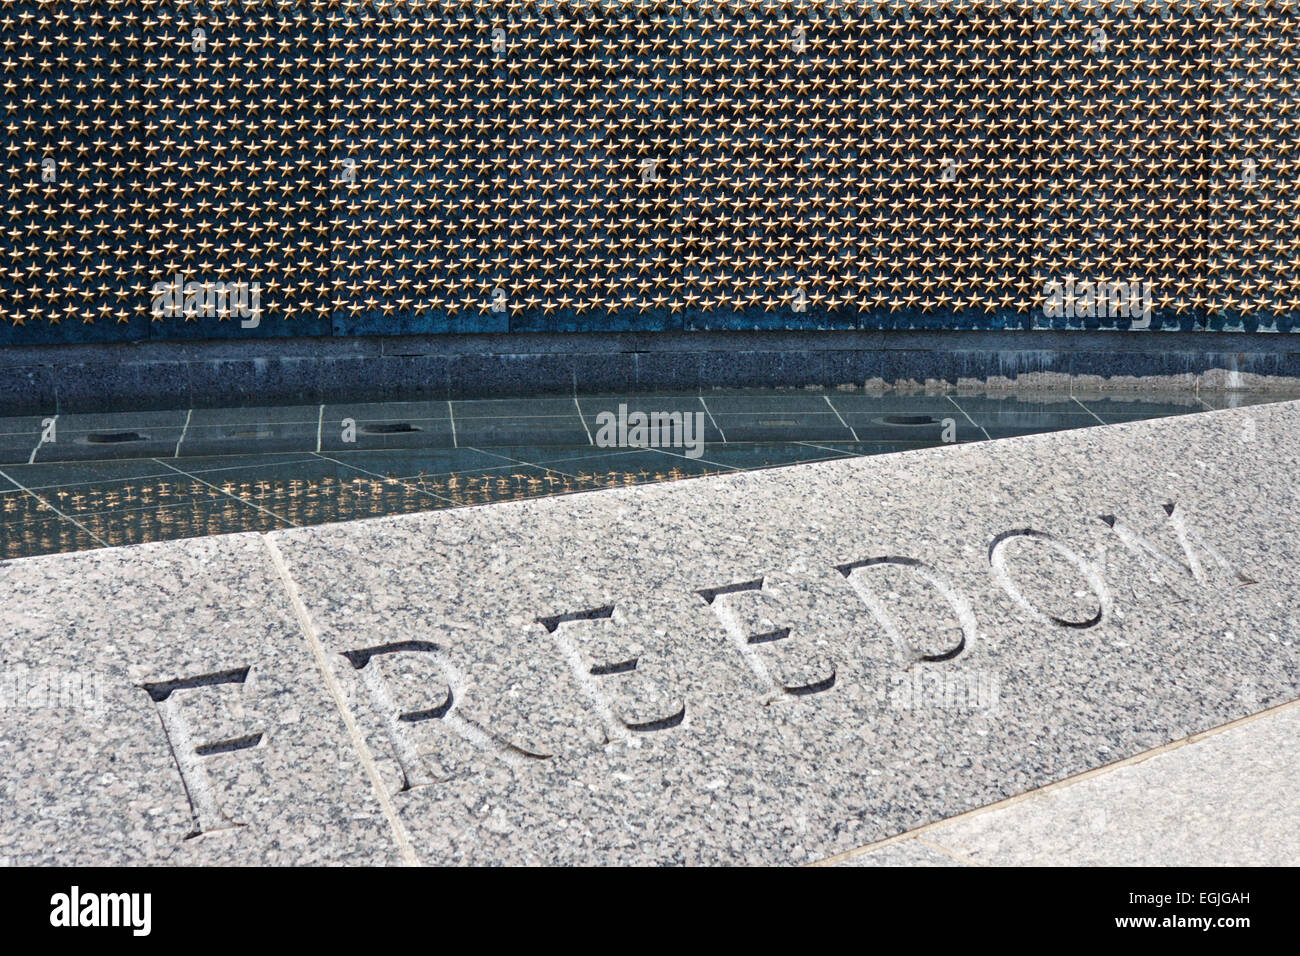 El muro de la libertad nacional, Memorial de la II Guerra Mundial, Washington, D.C., Estados Unidos. "Aquí nos marca el precio de la libertad" Foto de stock